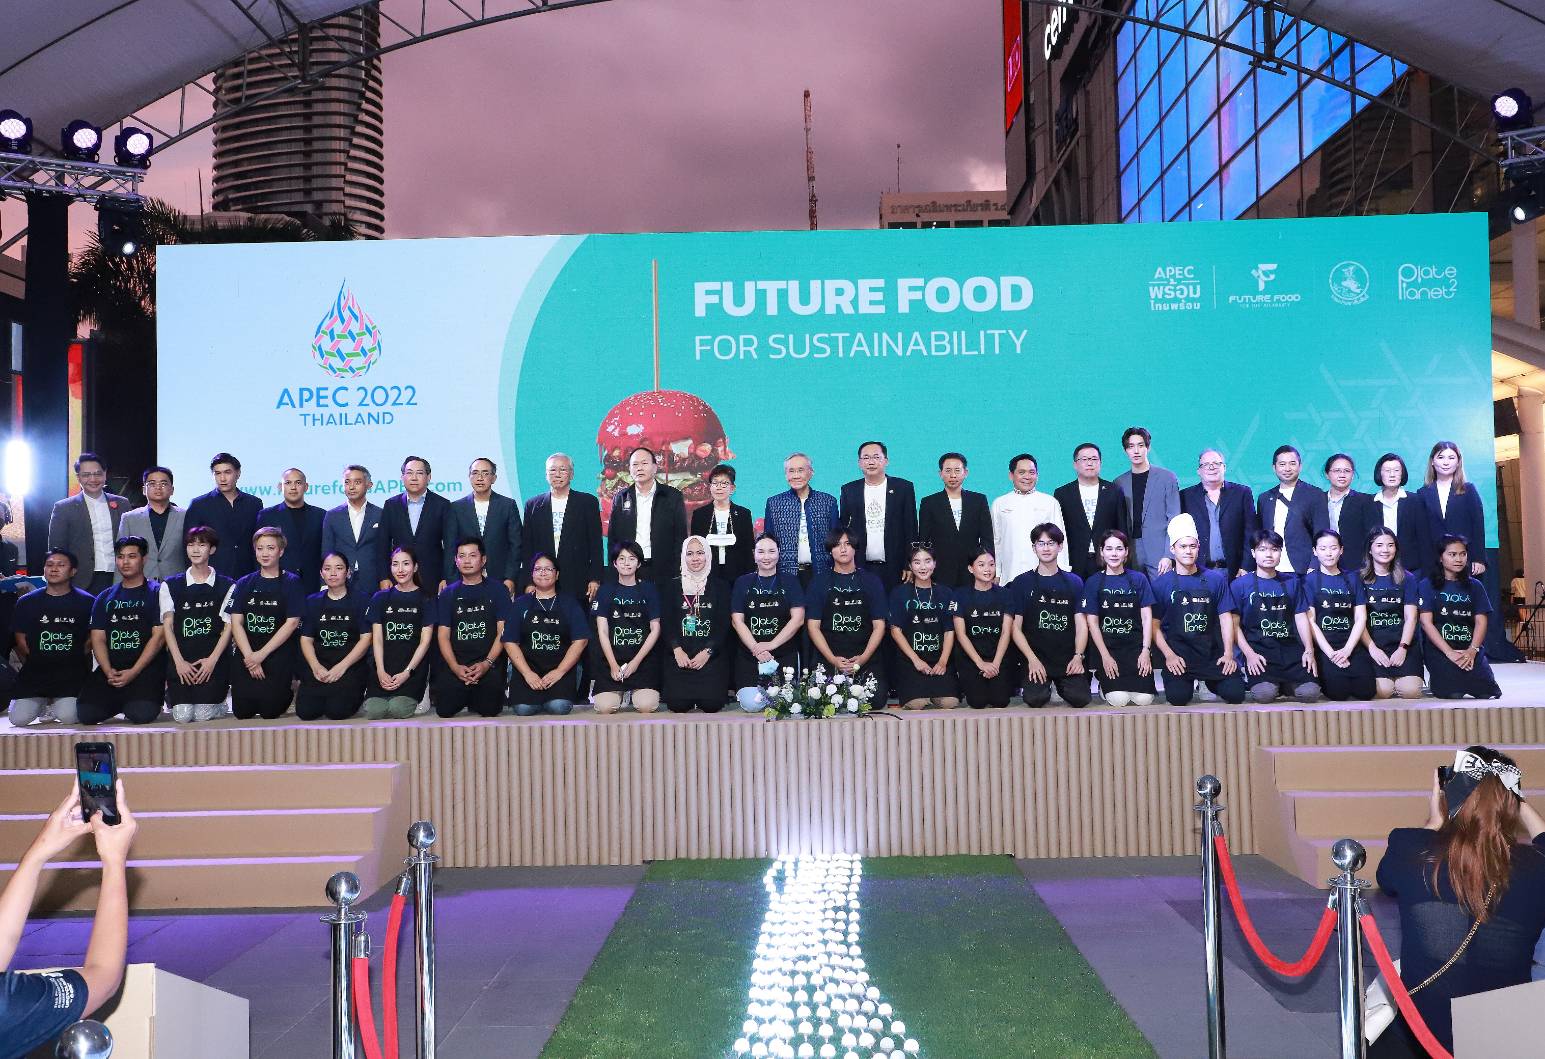 รัฐบาล ชวนชิม “เมนูอาหารอนาคต” ฝีมือคนไทย ครีเอทขึ้นใหม่ต้อนรับผู้นำ 21 เขตเศรษฐกิจ ในโครงการ APEC Future Food for Sustainability